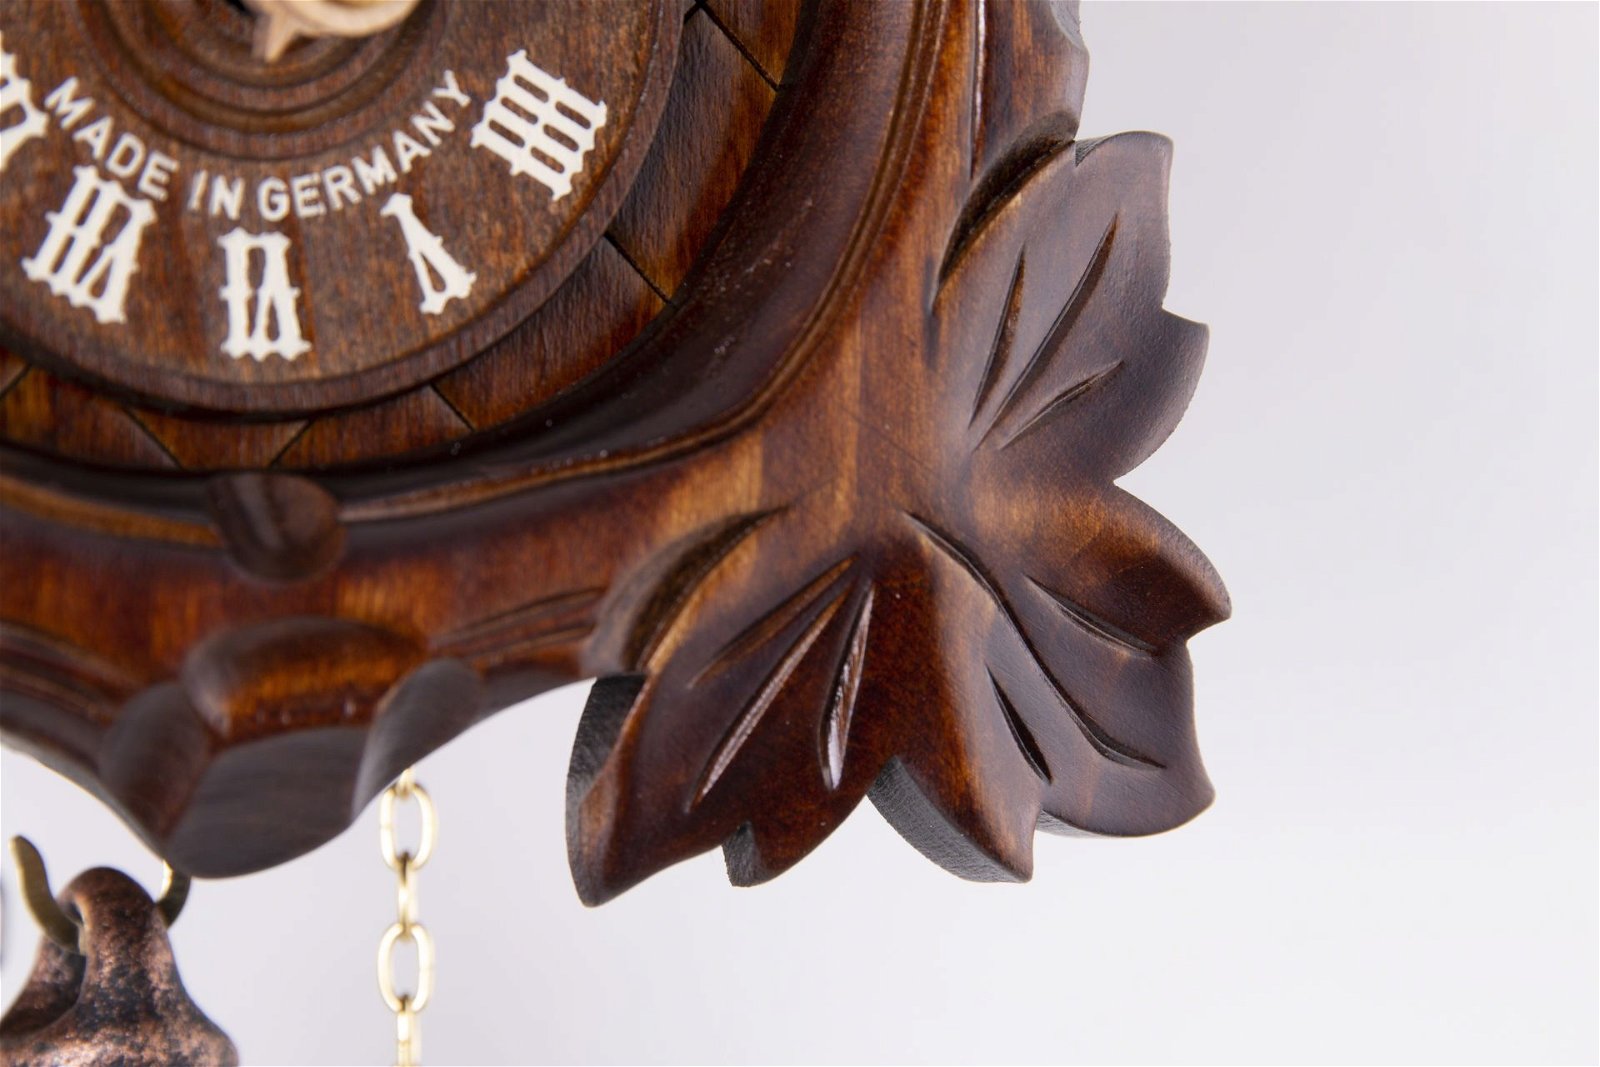 Reloj de cuco estilo “Madera tallada” movimiento mecánico de 1 día 20cm de Anton Schneider